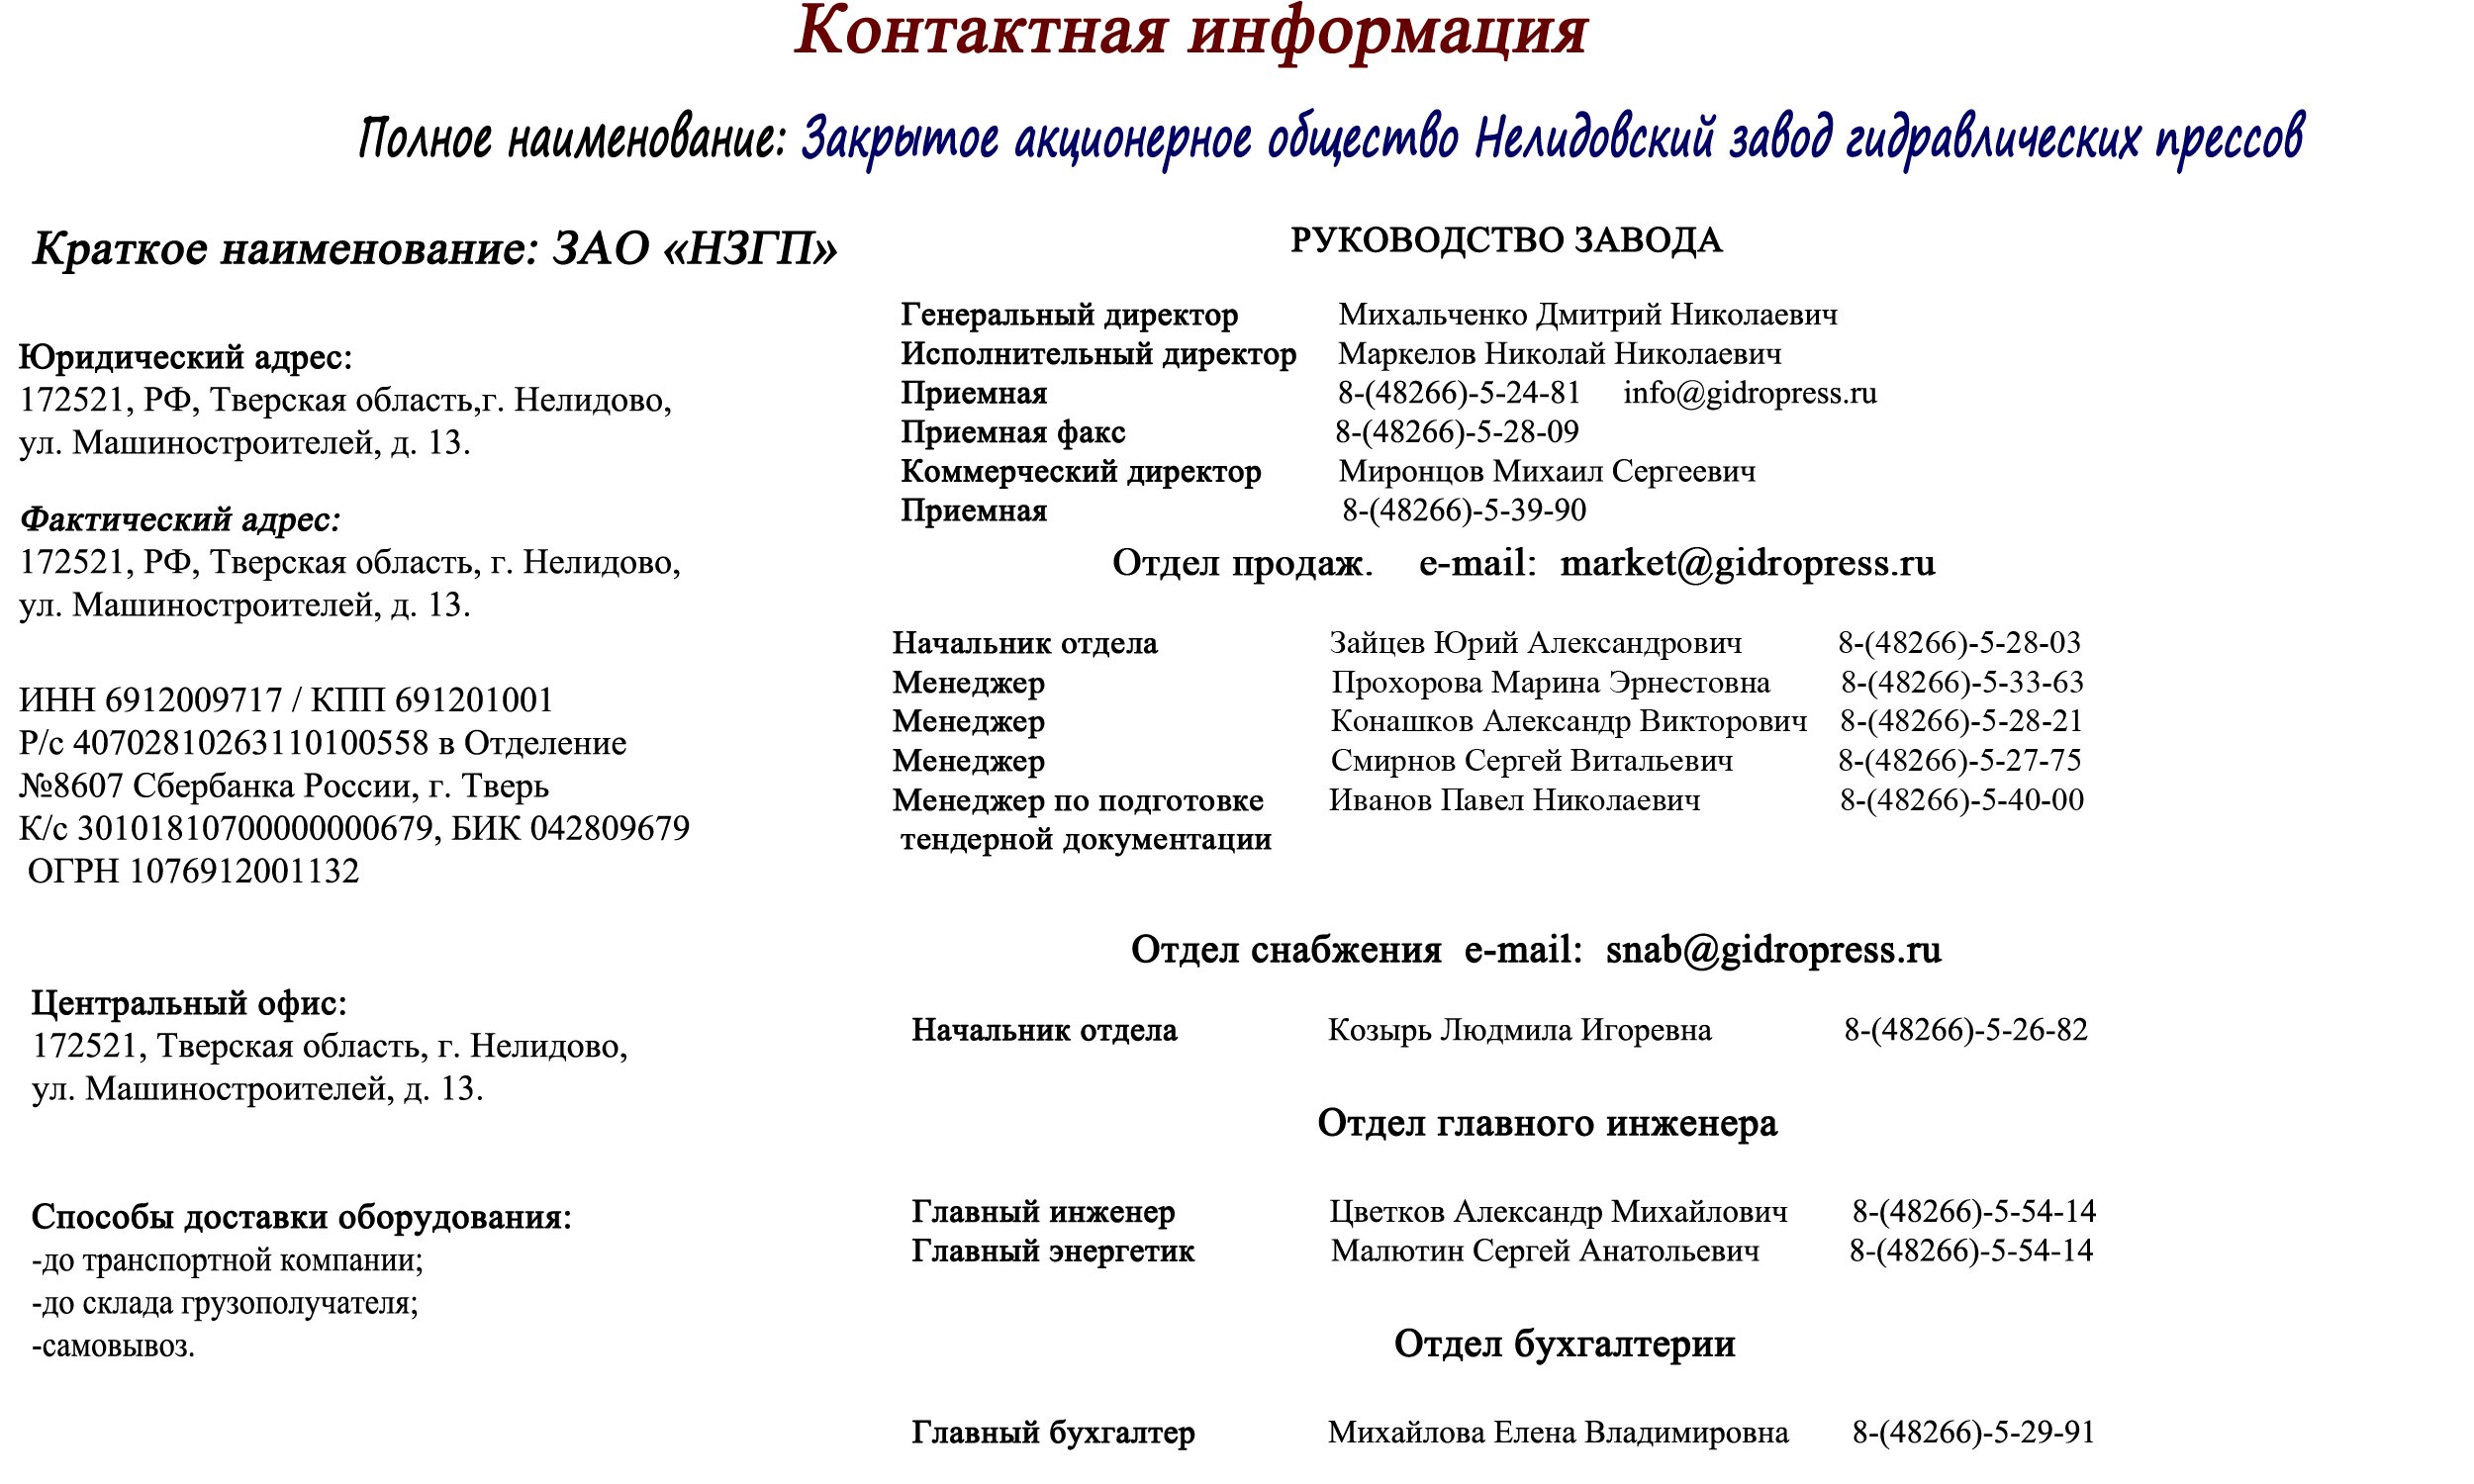 Контакты Нелидовского завода гидровлических прессов